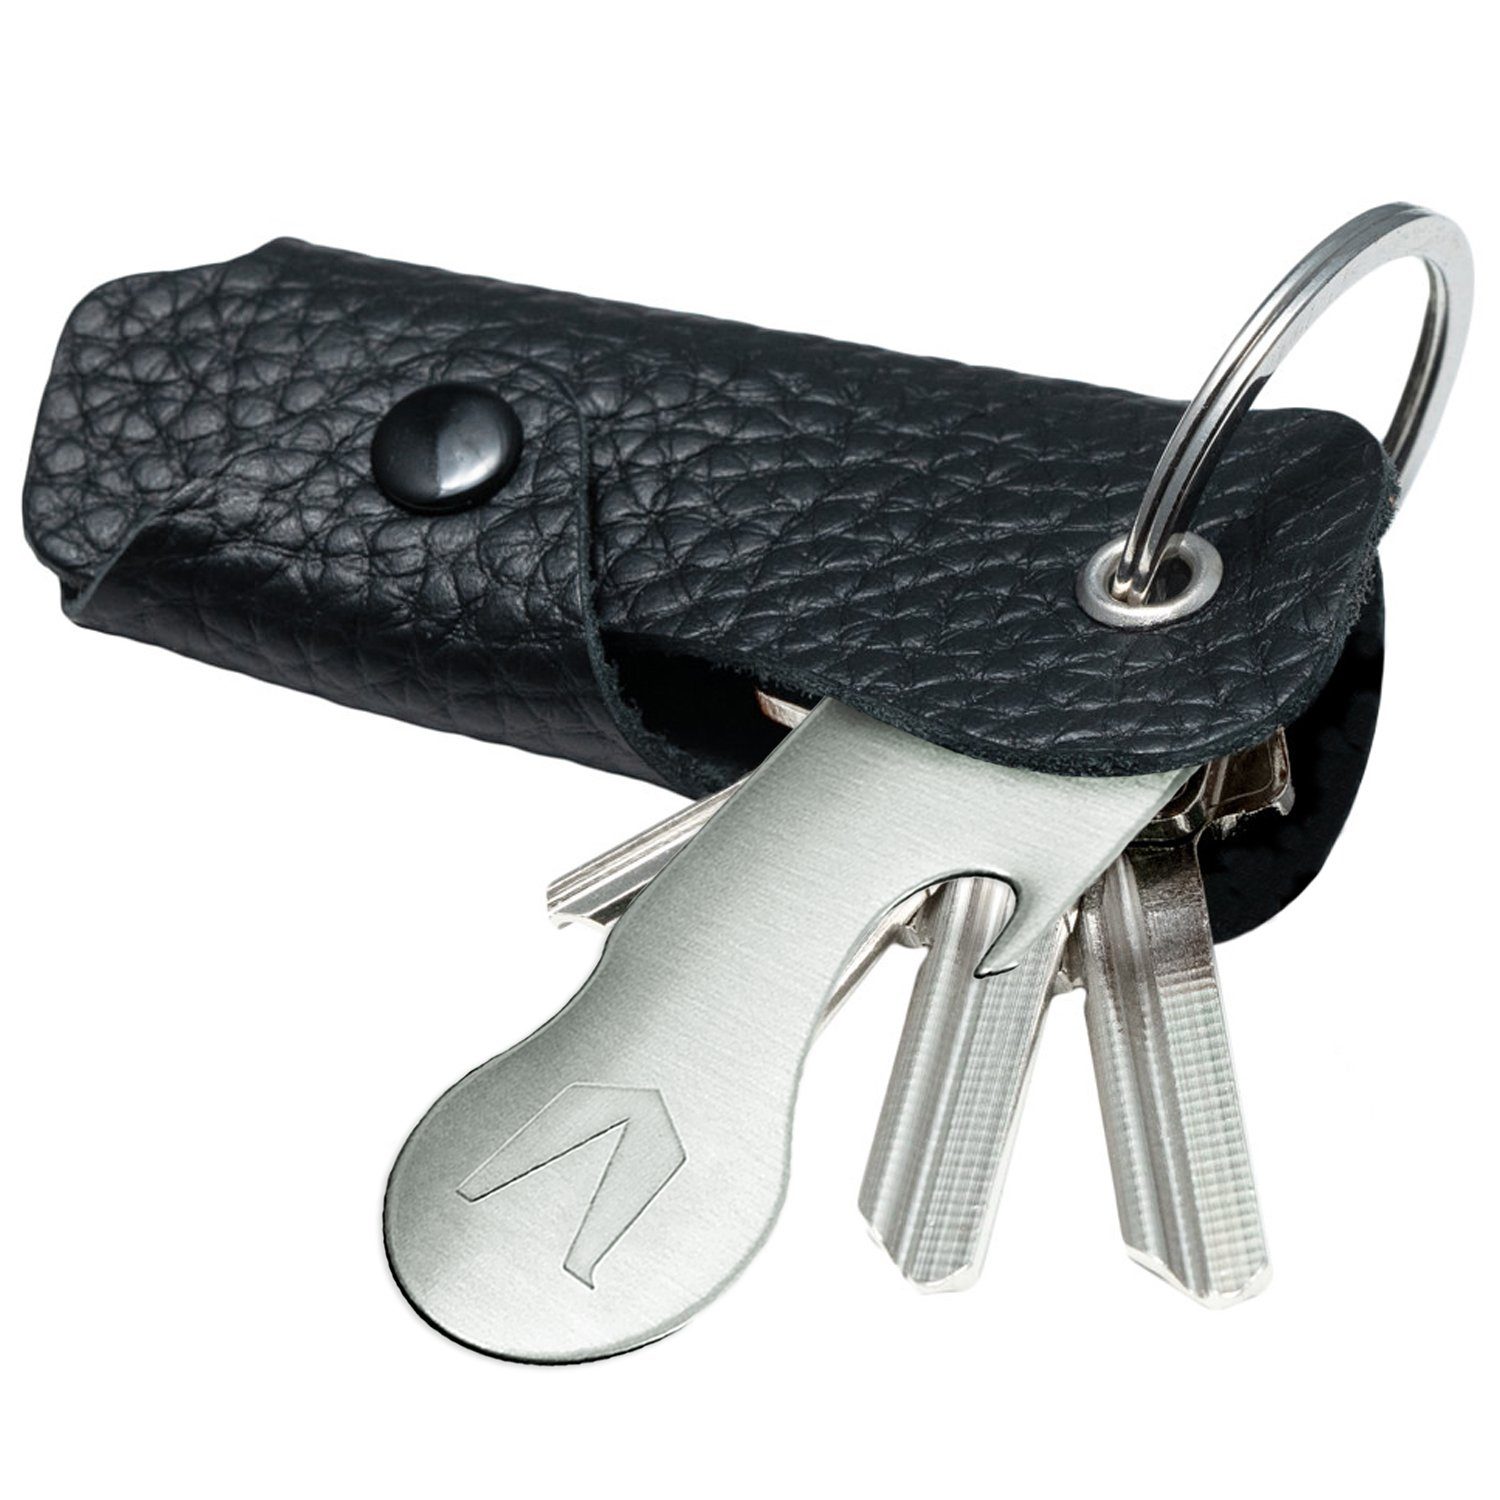 MAGATI Schlüsseltasche Occhio Nero aus Schlüssel, Platz Leder Schwarz 1-6 für Schlüsselanhänger Einkaufswagenlöser, mit